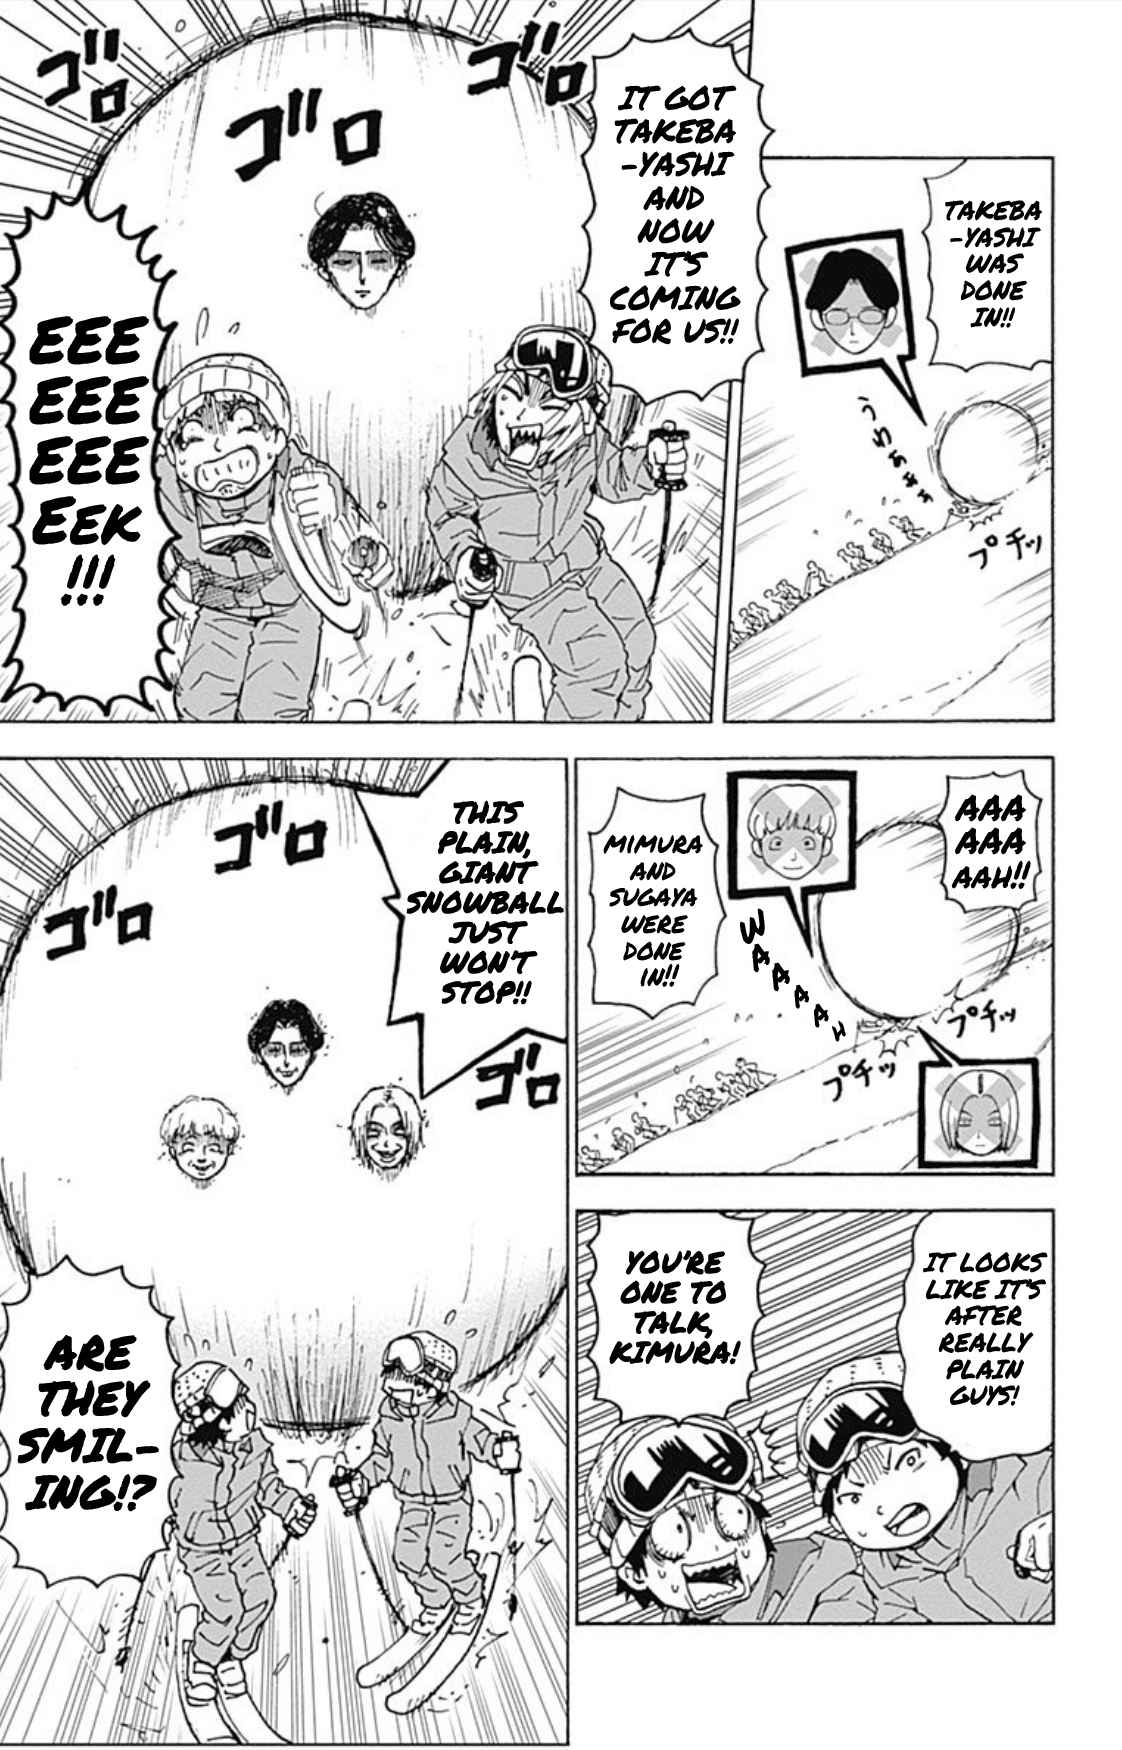 Korosensei Quest! Vol. 3 Ch. 17 Class E Skis